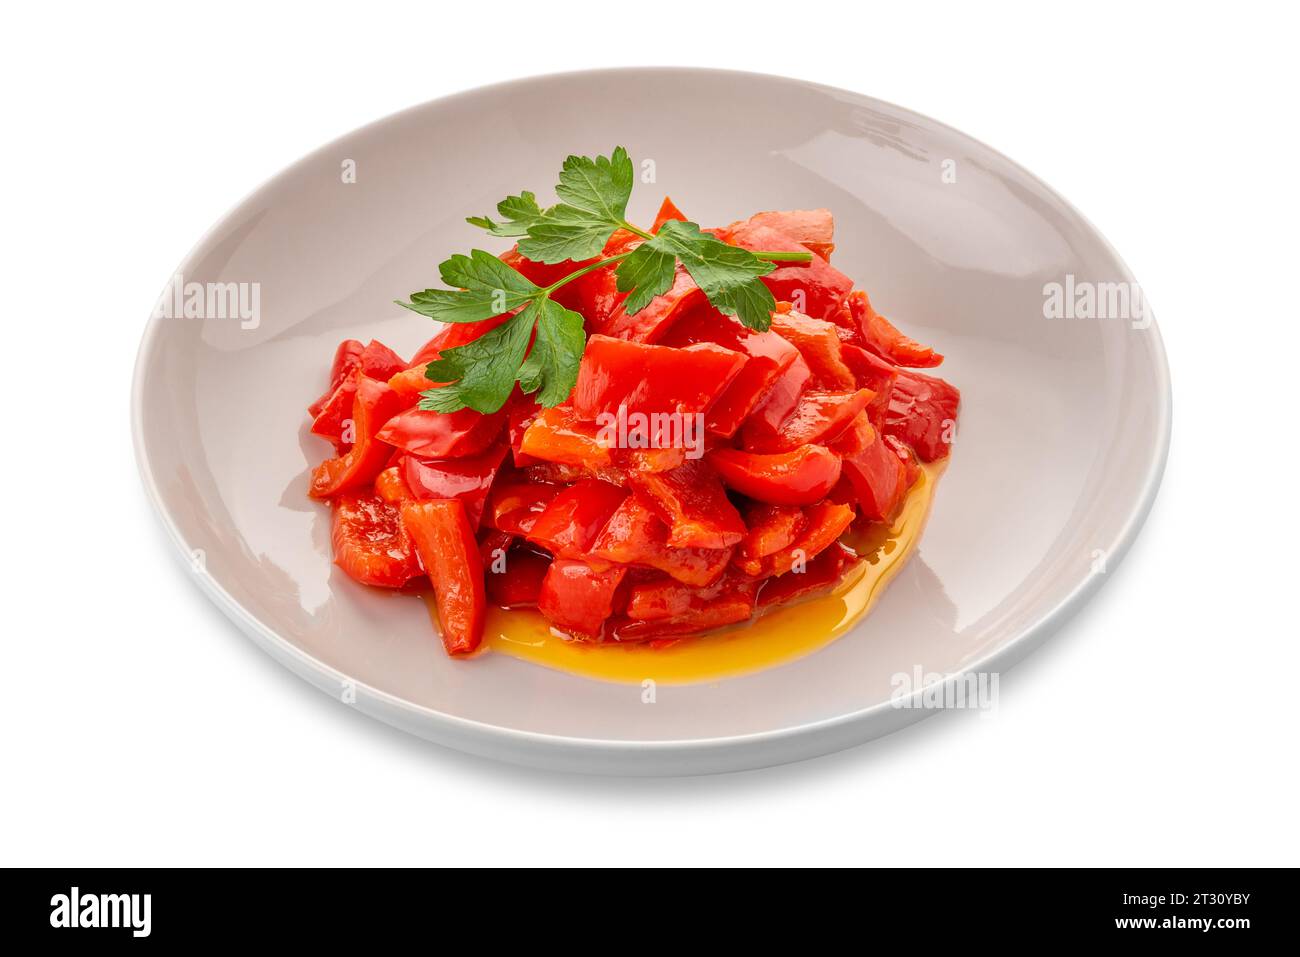 Peperoni rossi cotti a pezzi conditi con olio d'oliva e foglie di prezzemolo - peperonata in piatto bianco isolato su bianco con percorso di ritaglio incluso Foto Stock